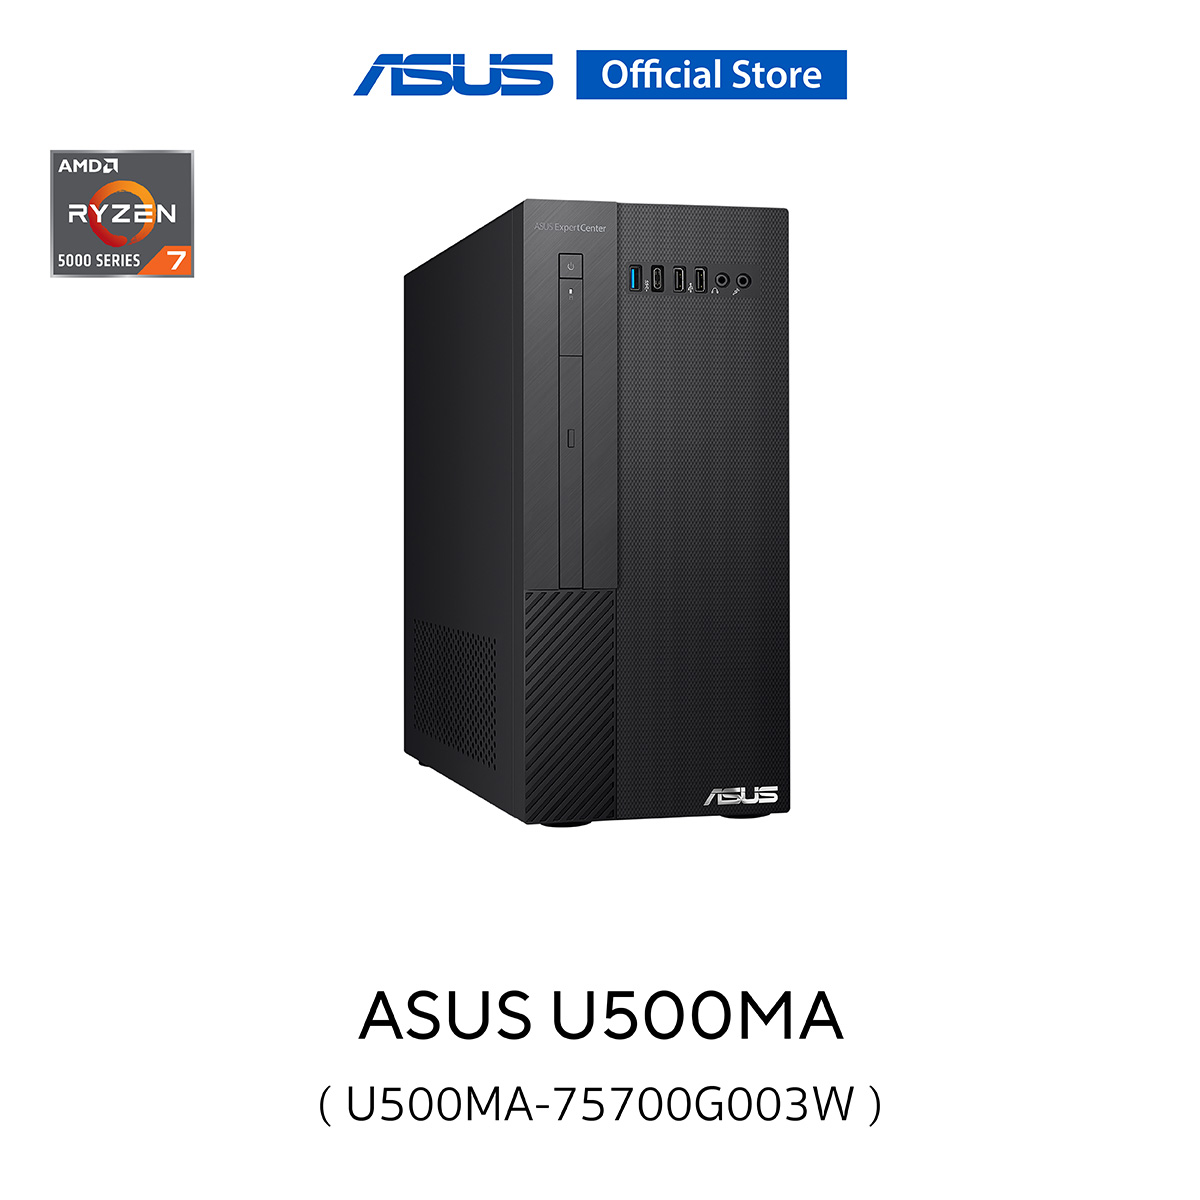 Asus U500MA-75700G003W, desktop, Ryzen 7 5700G, 8GB DDR4